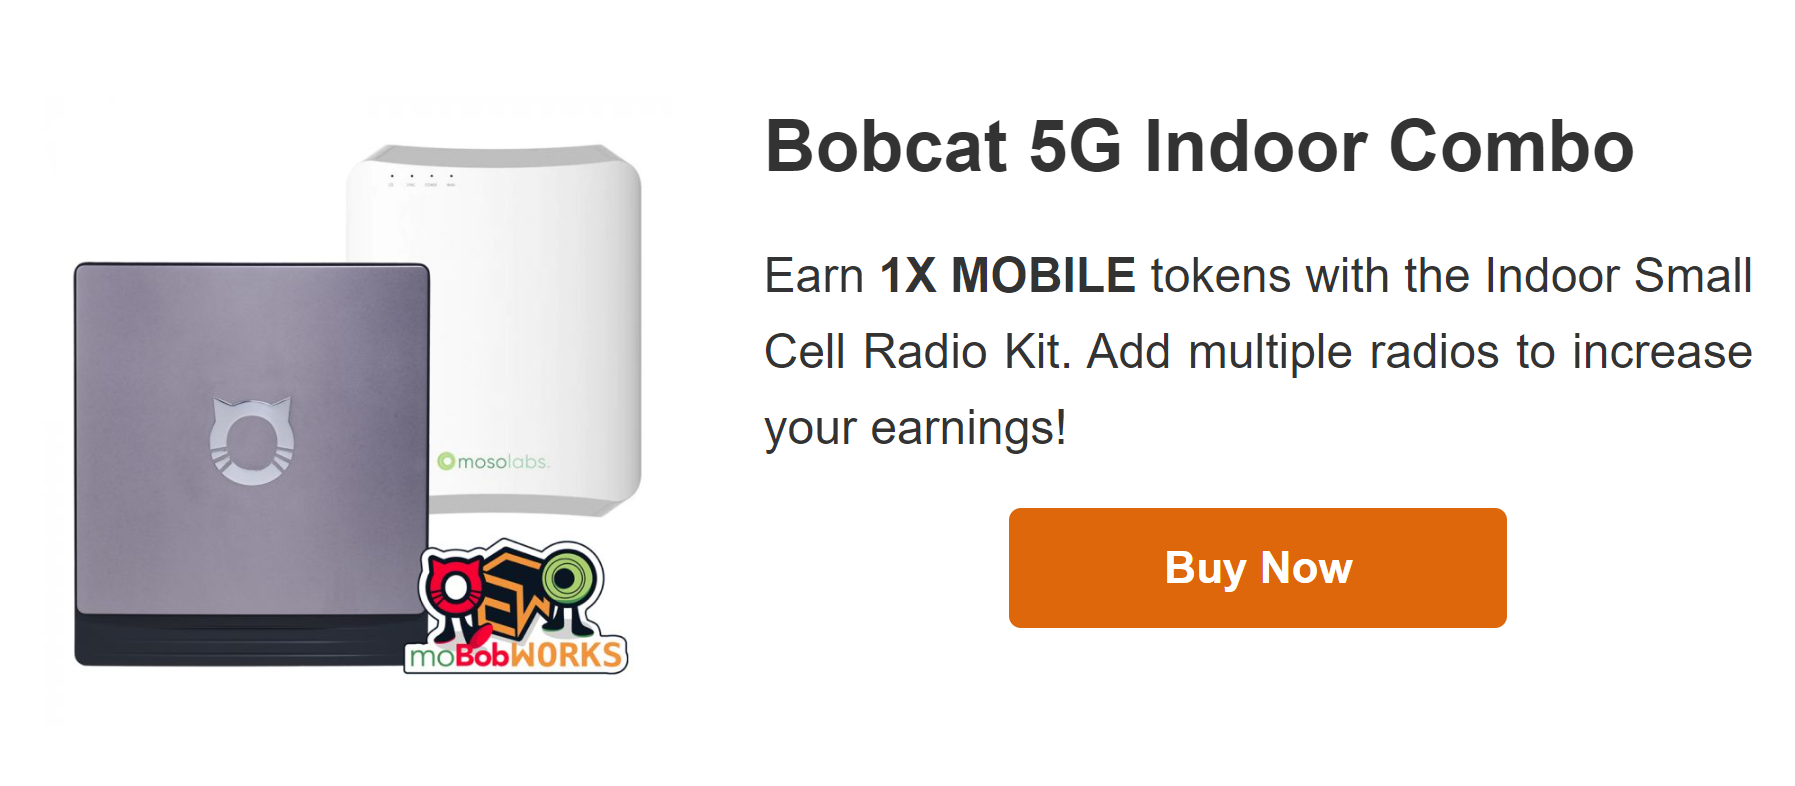 Bobcat 5G Indoor Combo